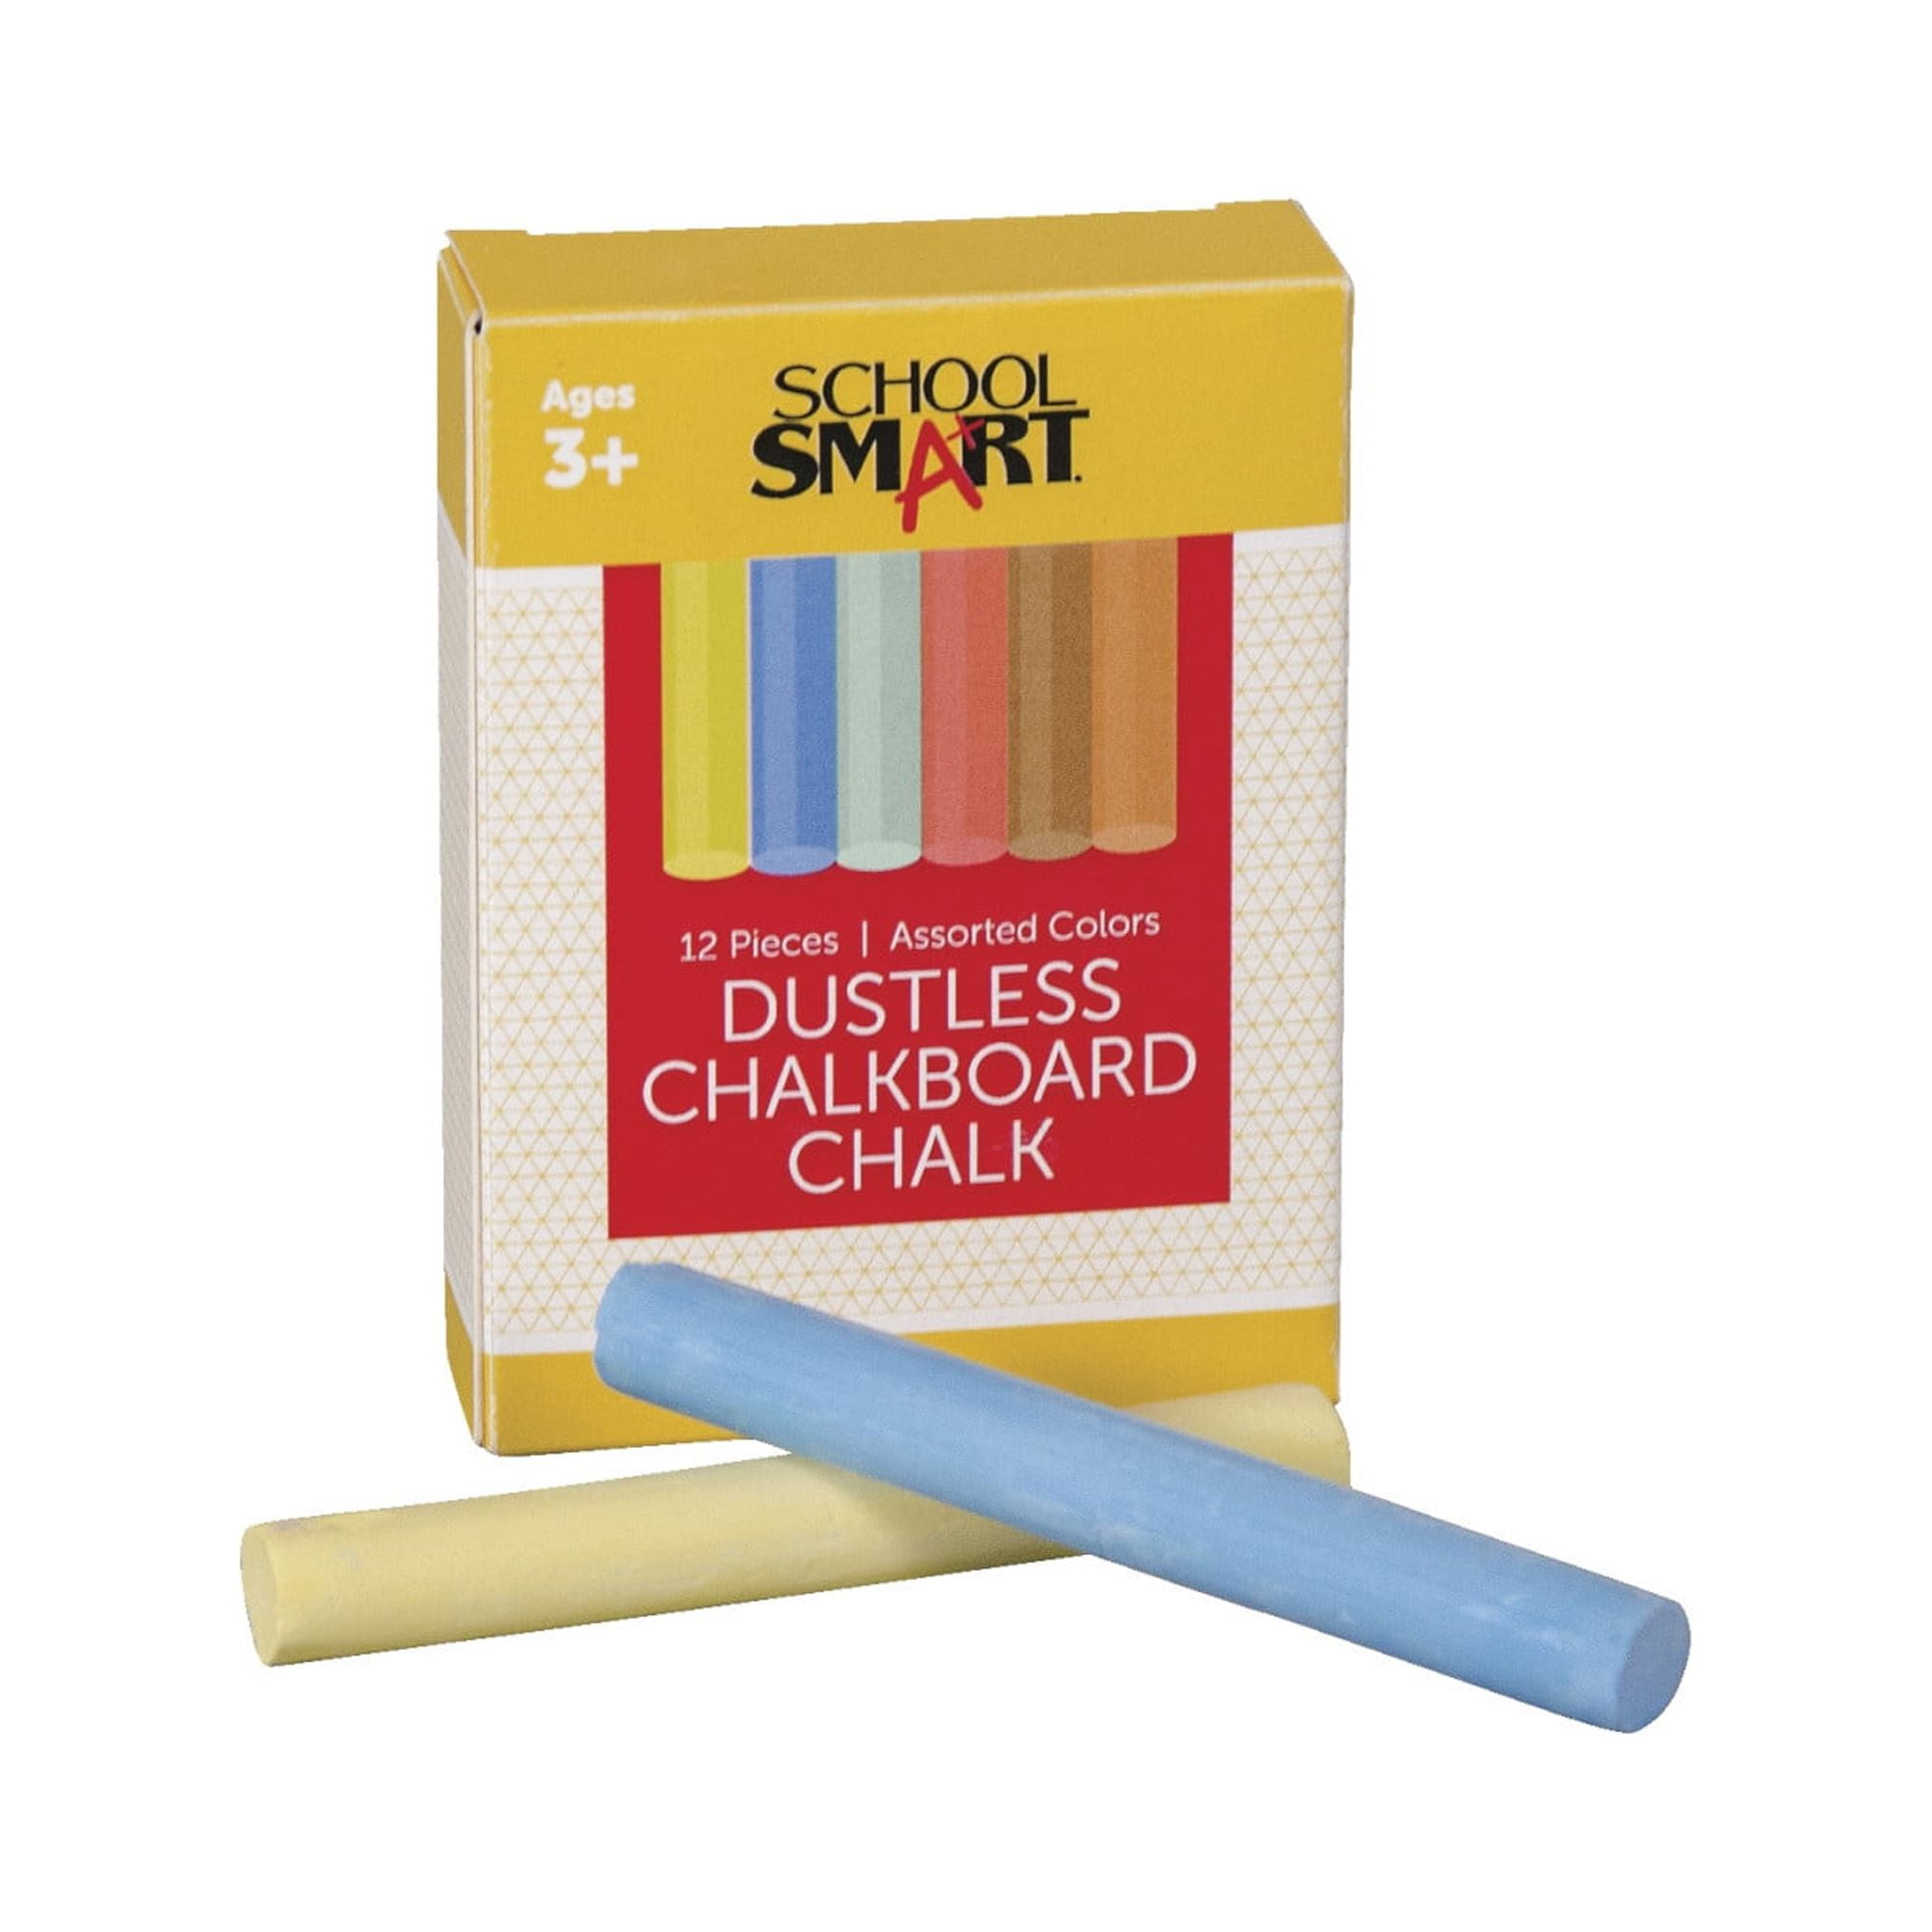 HGYCPP Universal Dustless Chalk Holder Washable Twist up Design Chalk  Holder Length 3.54'' Diameter 0.59'' School Supplies